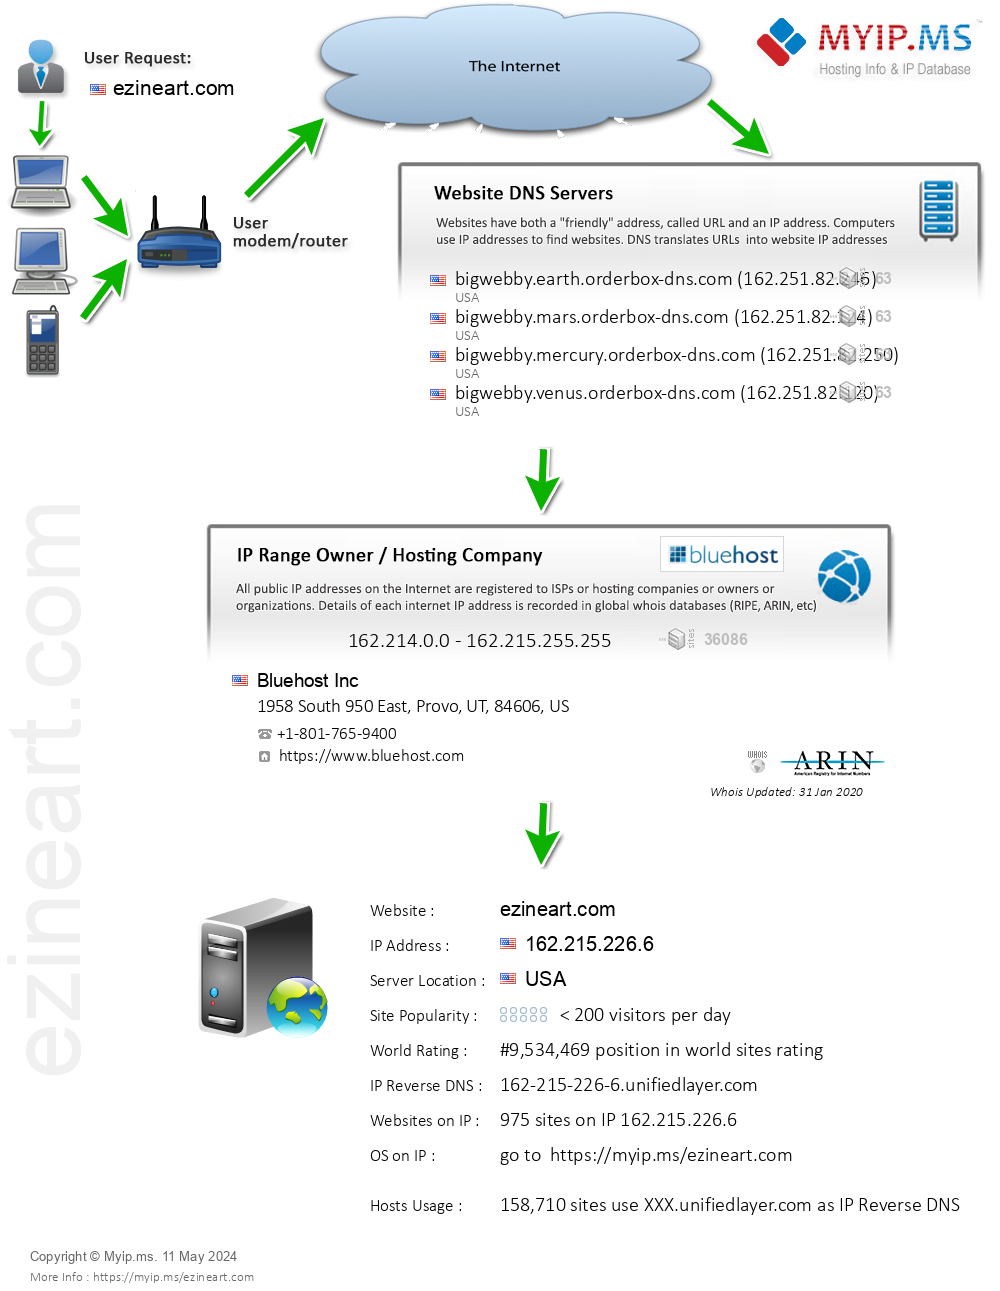 Ezineart.com - Website Hosting Visual IP Diagram